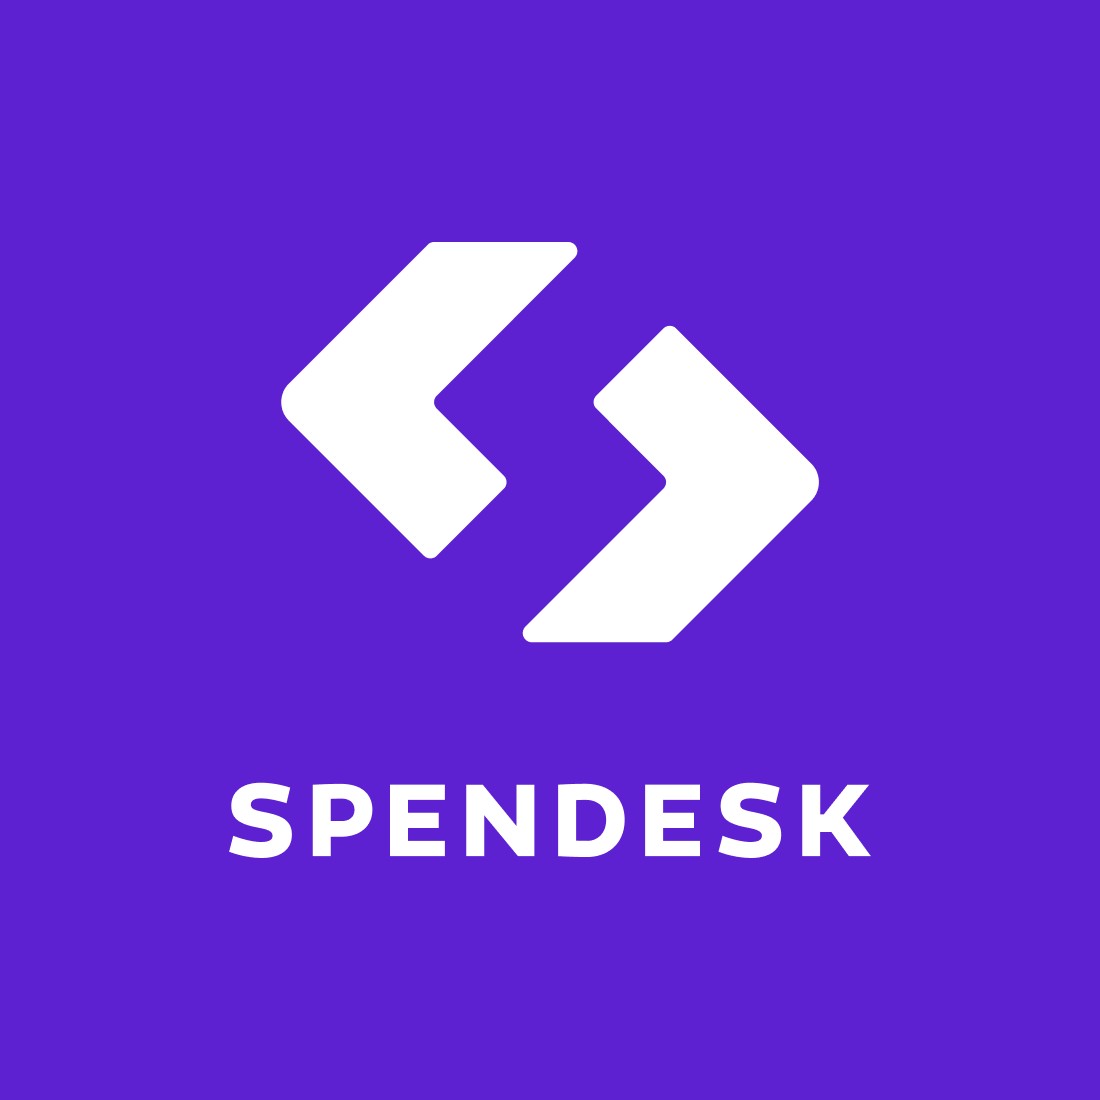 Hub 'Spendesk' - Spendesk